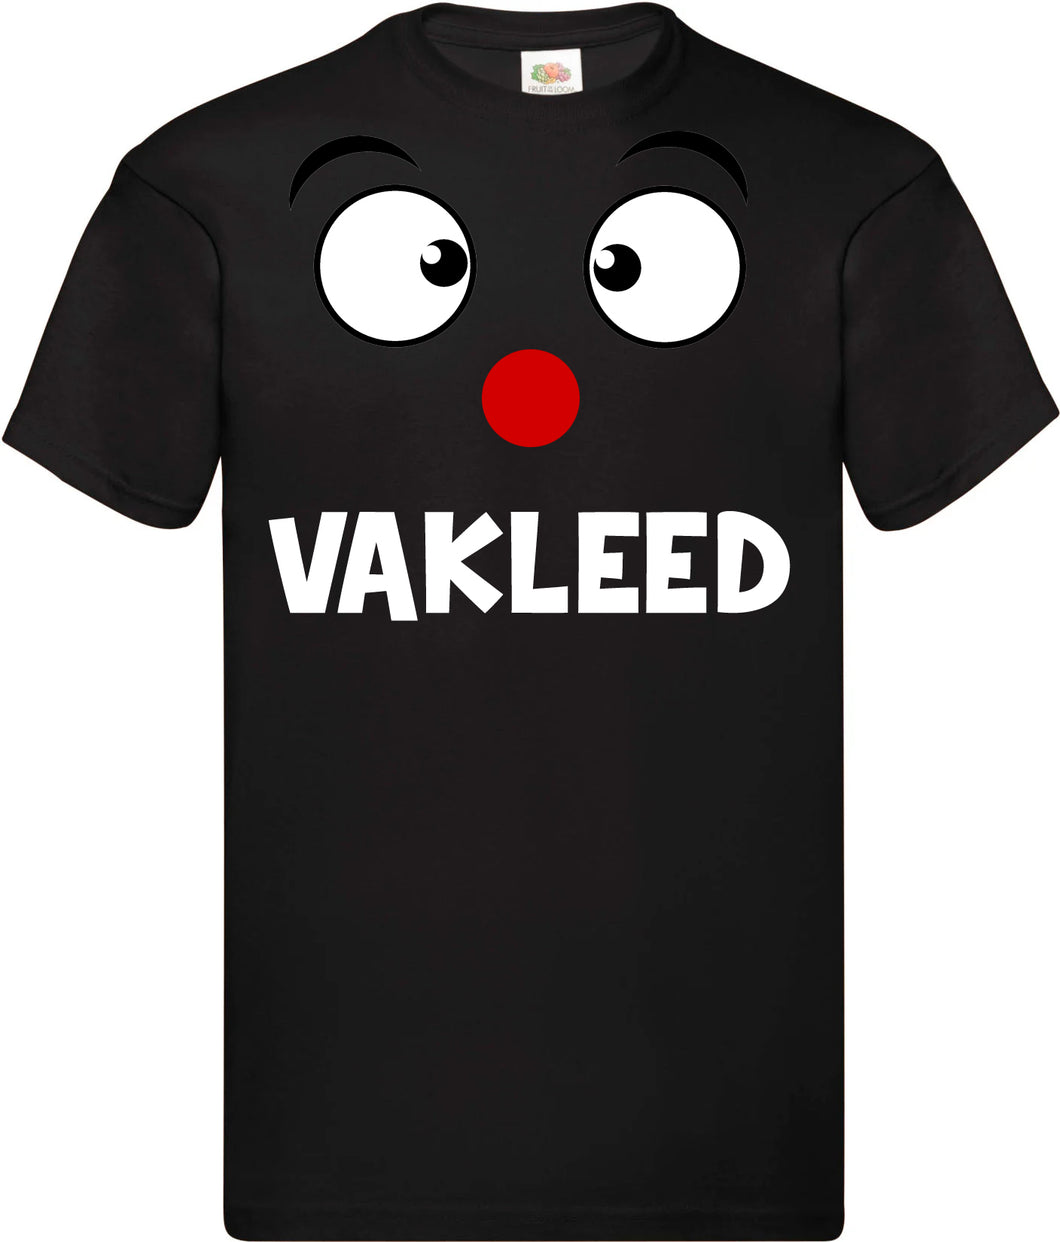 T-Shirt - VAKLEED